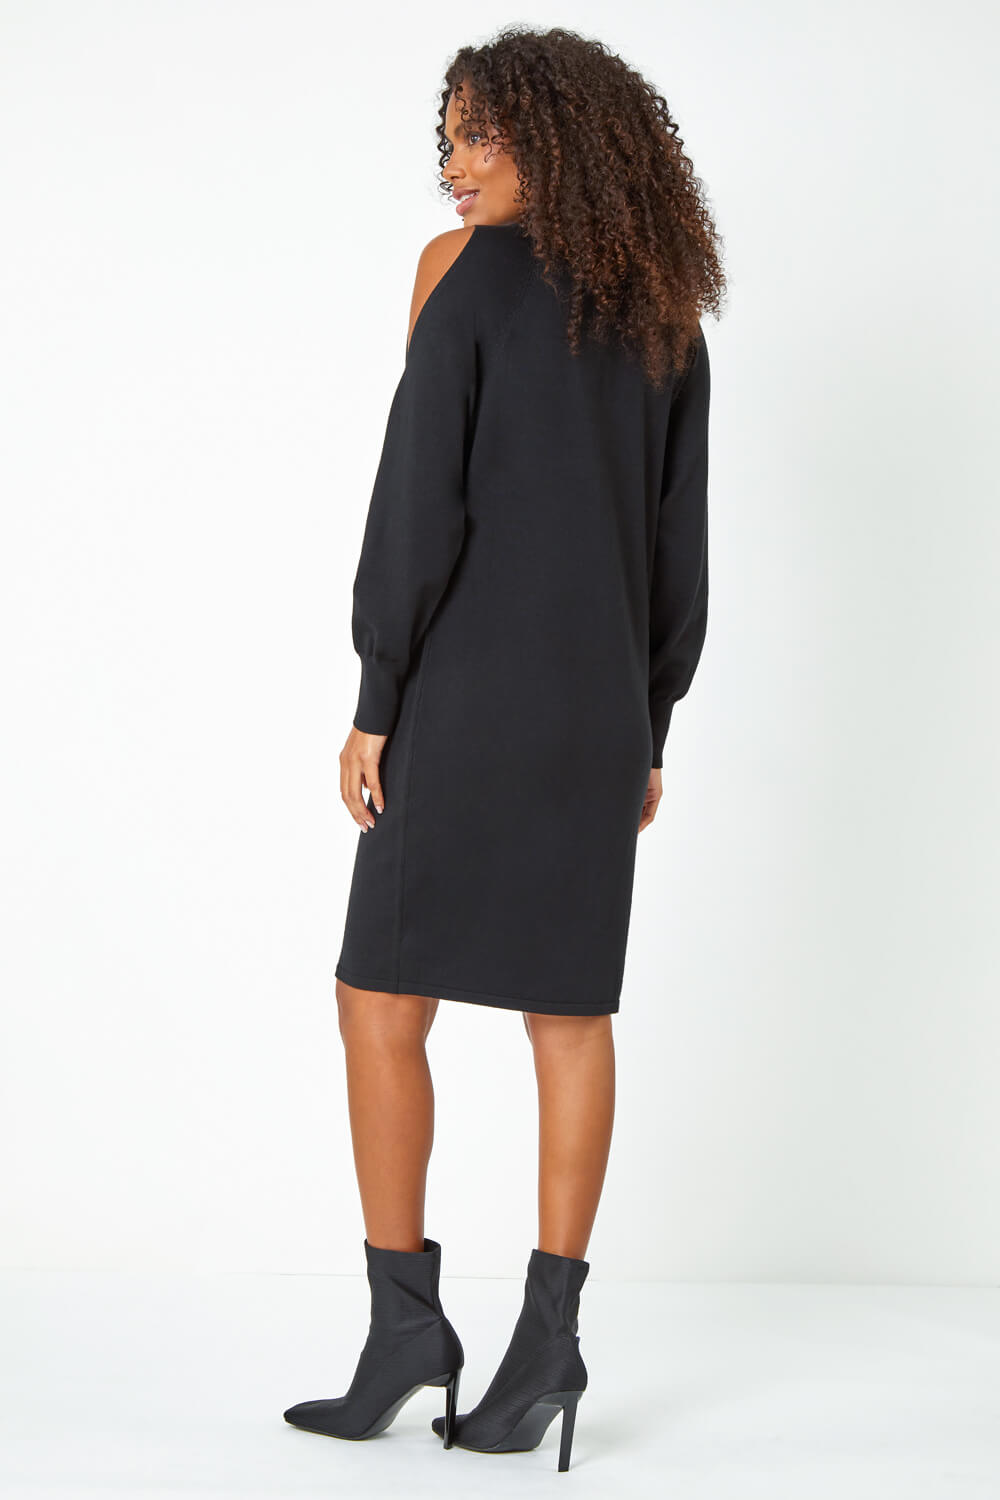 Black Embellished Split Sleeve Jumper Dress, Image 4 of 5